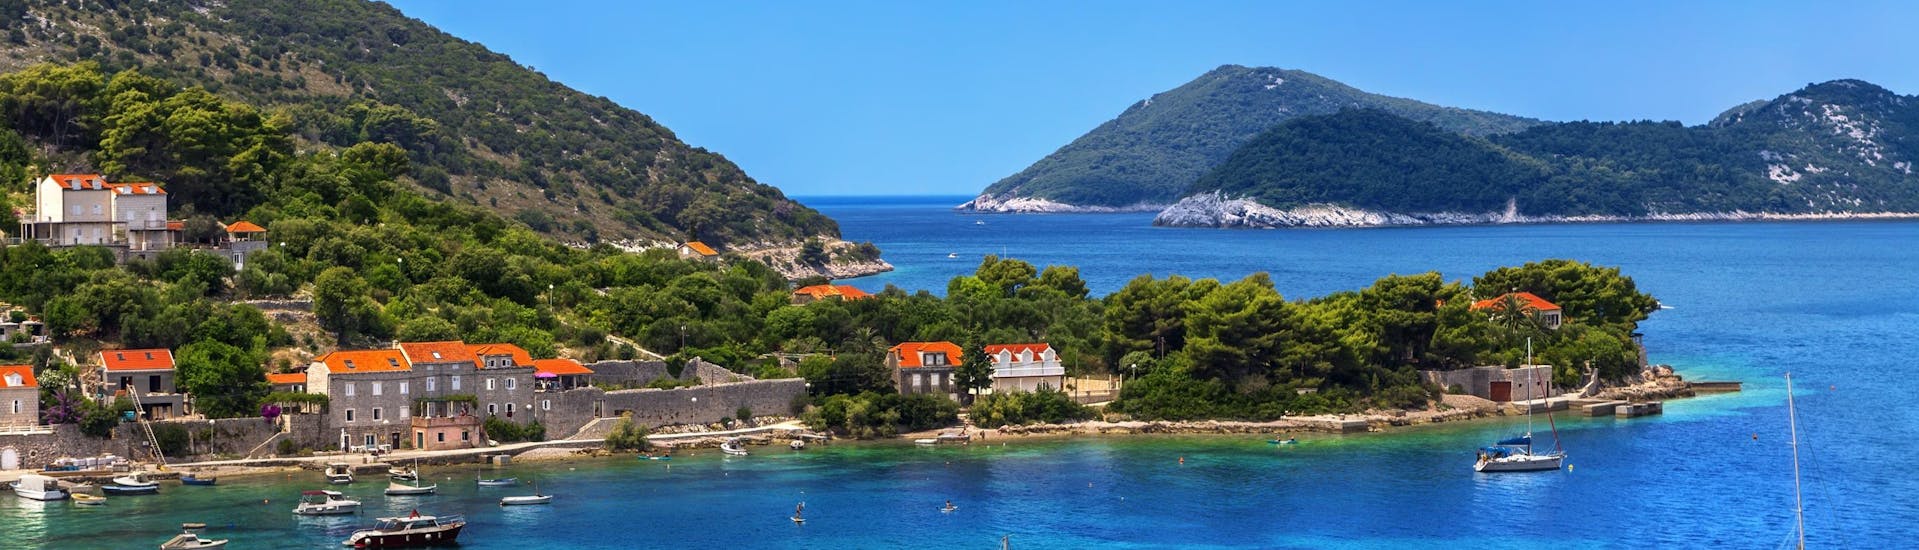 Imagen de la isla de Kolocep, que forma parte de las islas Elaphiti junto a la costa de Dubrovnik, un destino popular para las excursiones en barco.